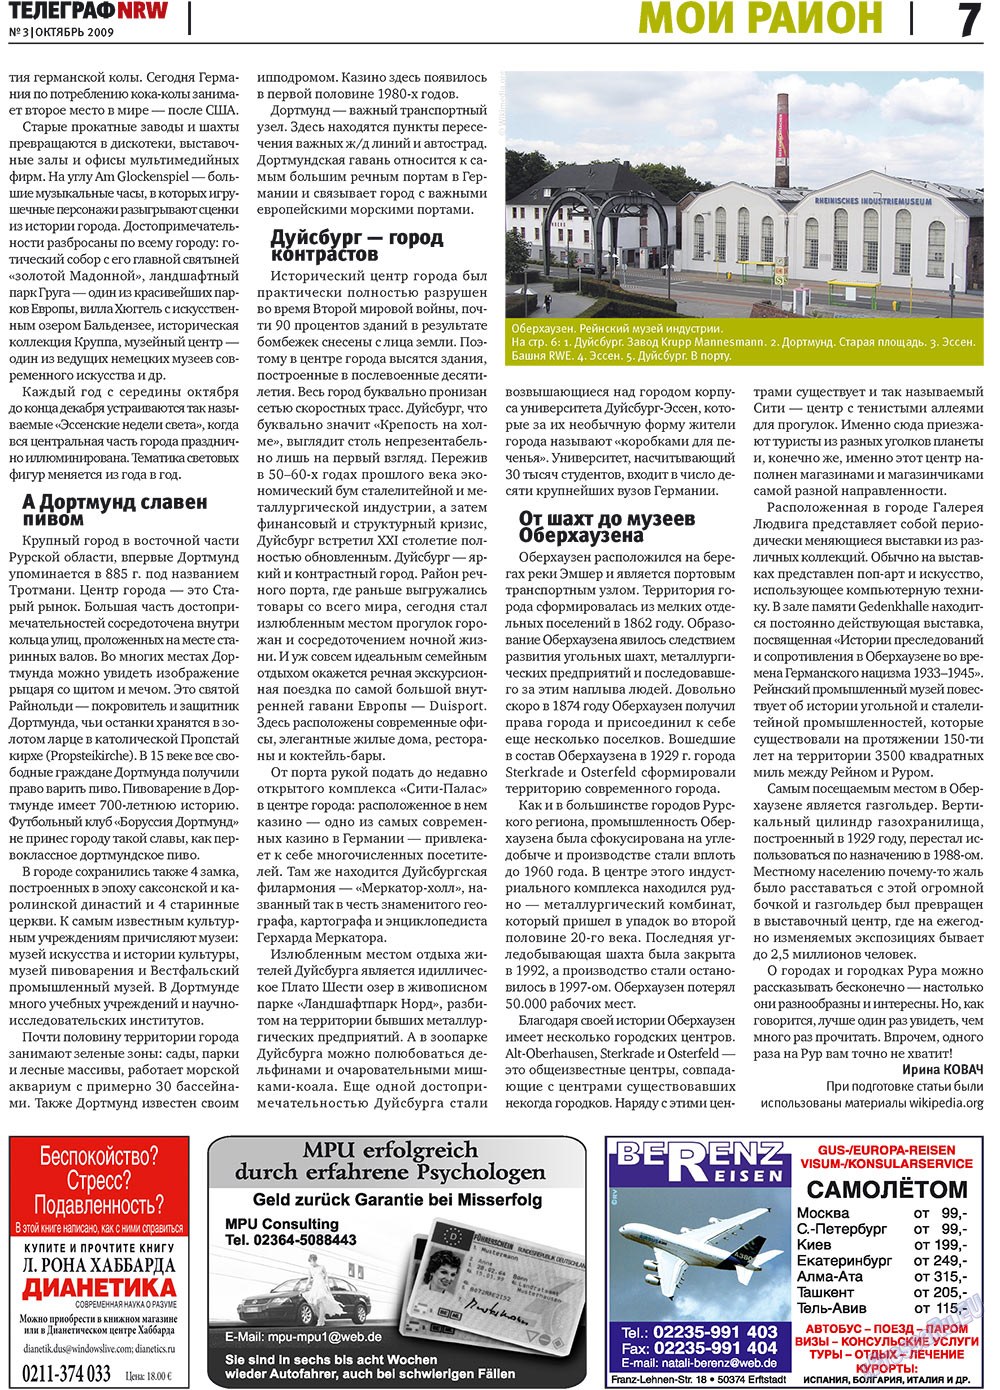 Телеграф NRW (газета). 2009 год, номер 3, стр. 7